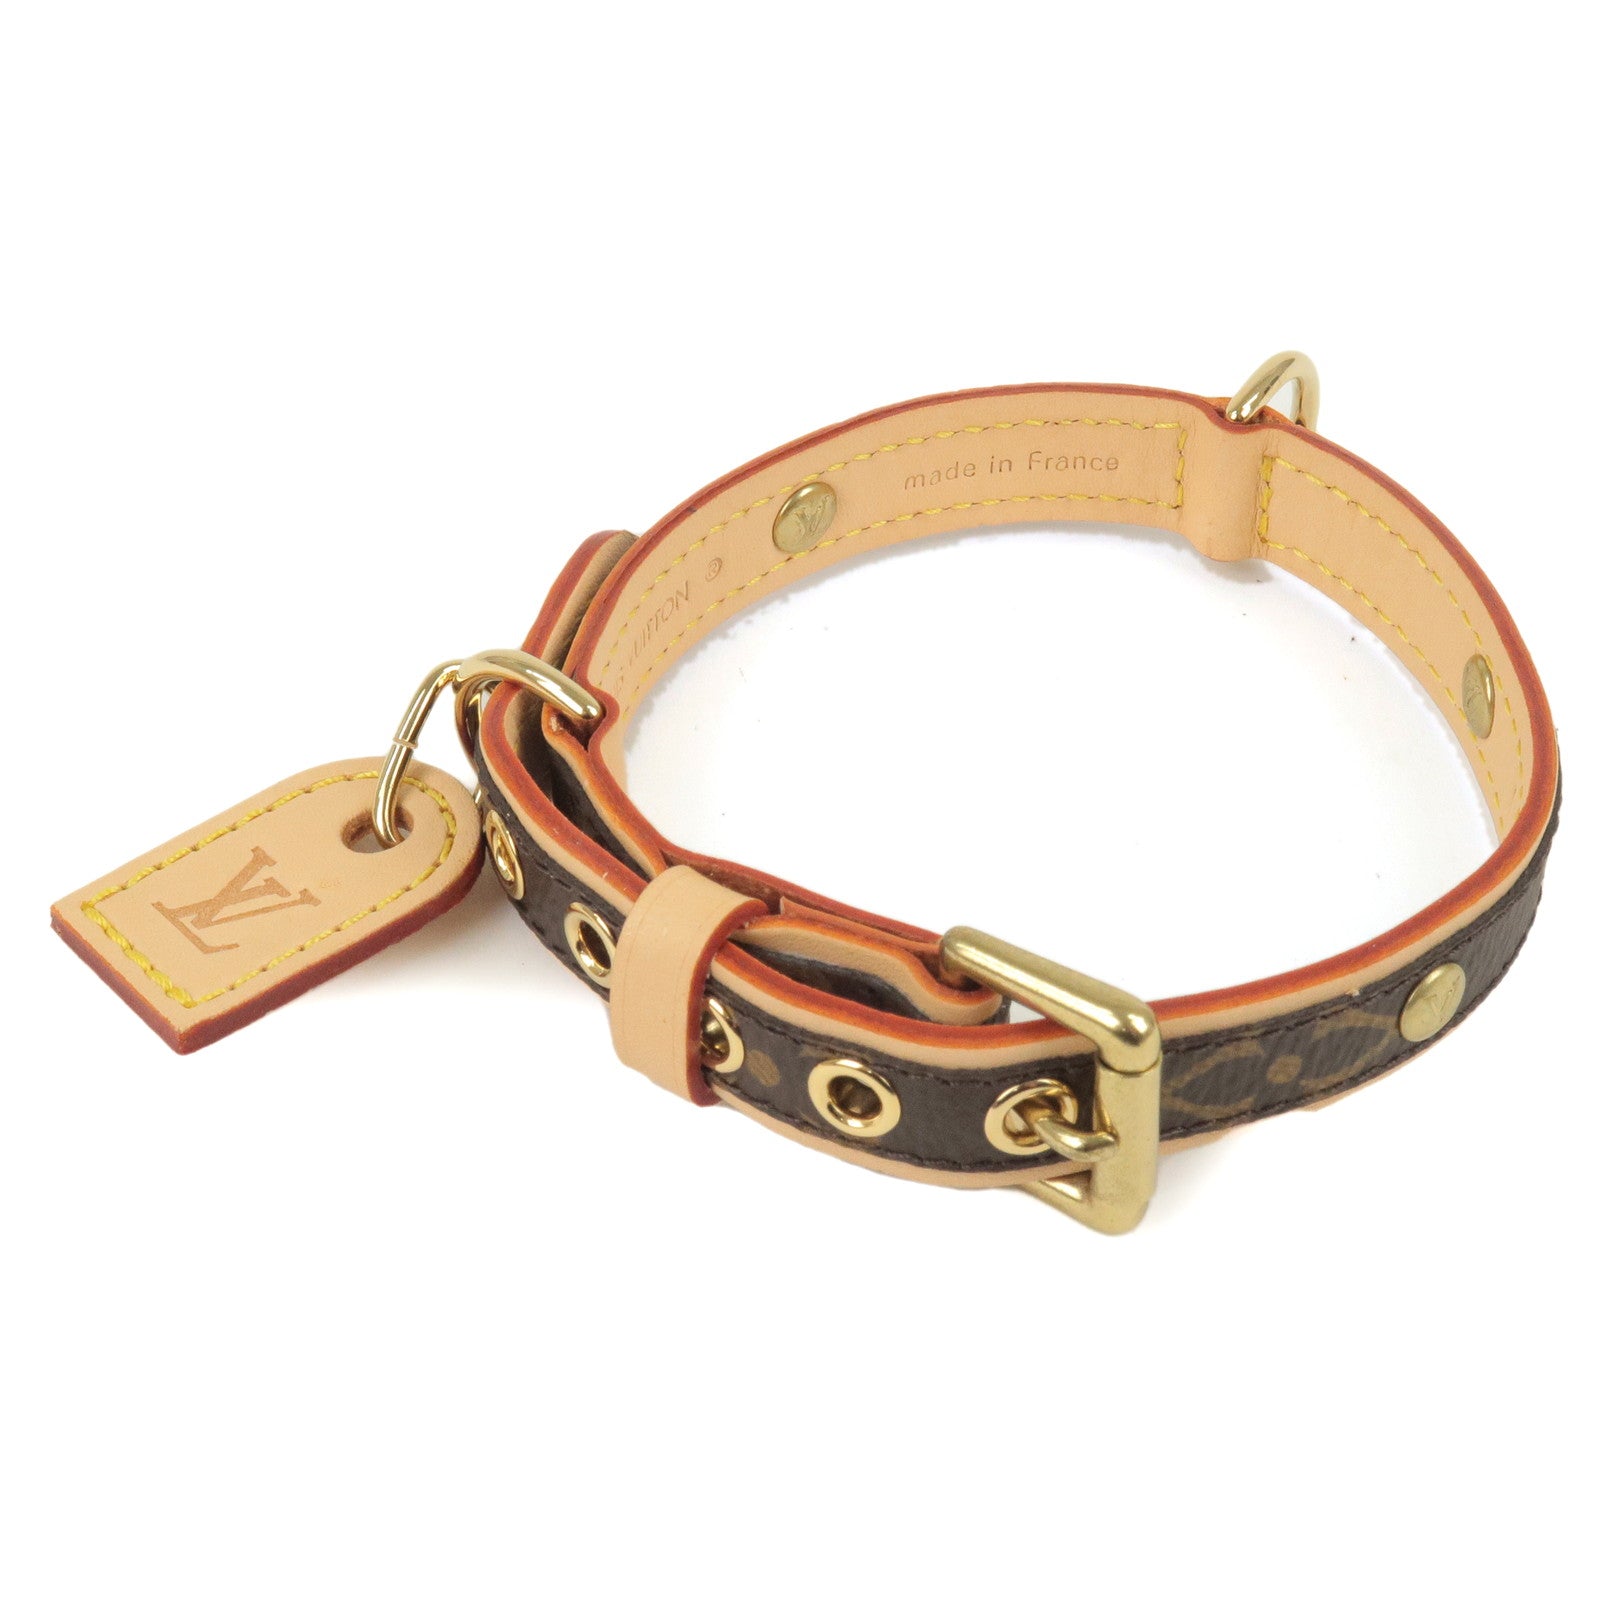 LOUIS VUITTON, a monogram canvas dog collar, Baxter Dog Collar